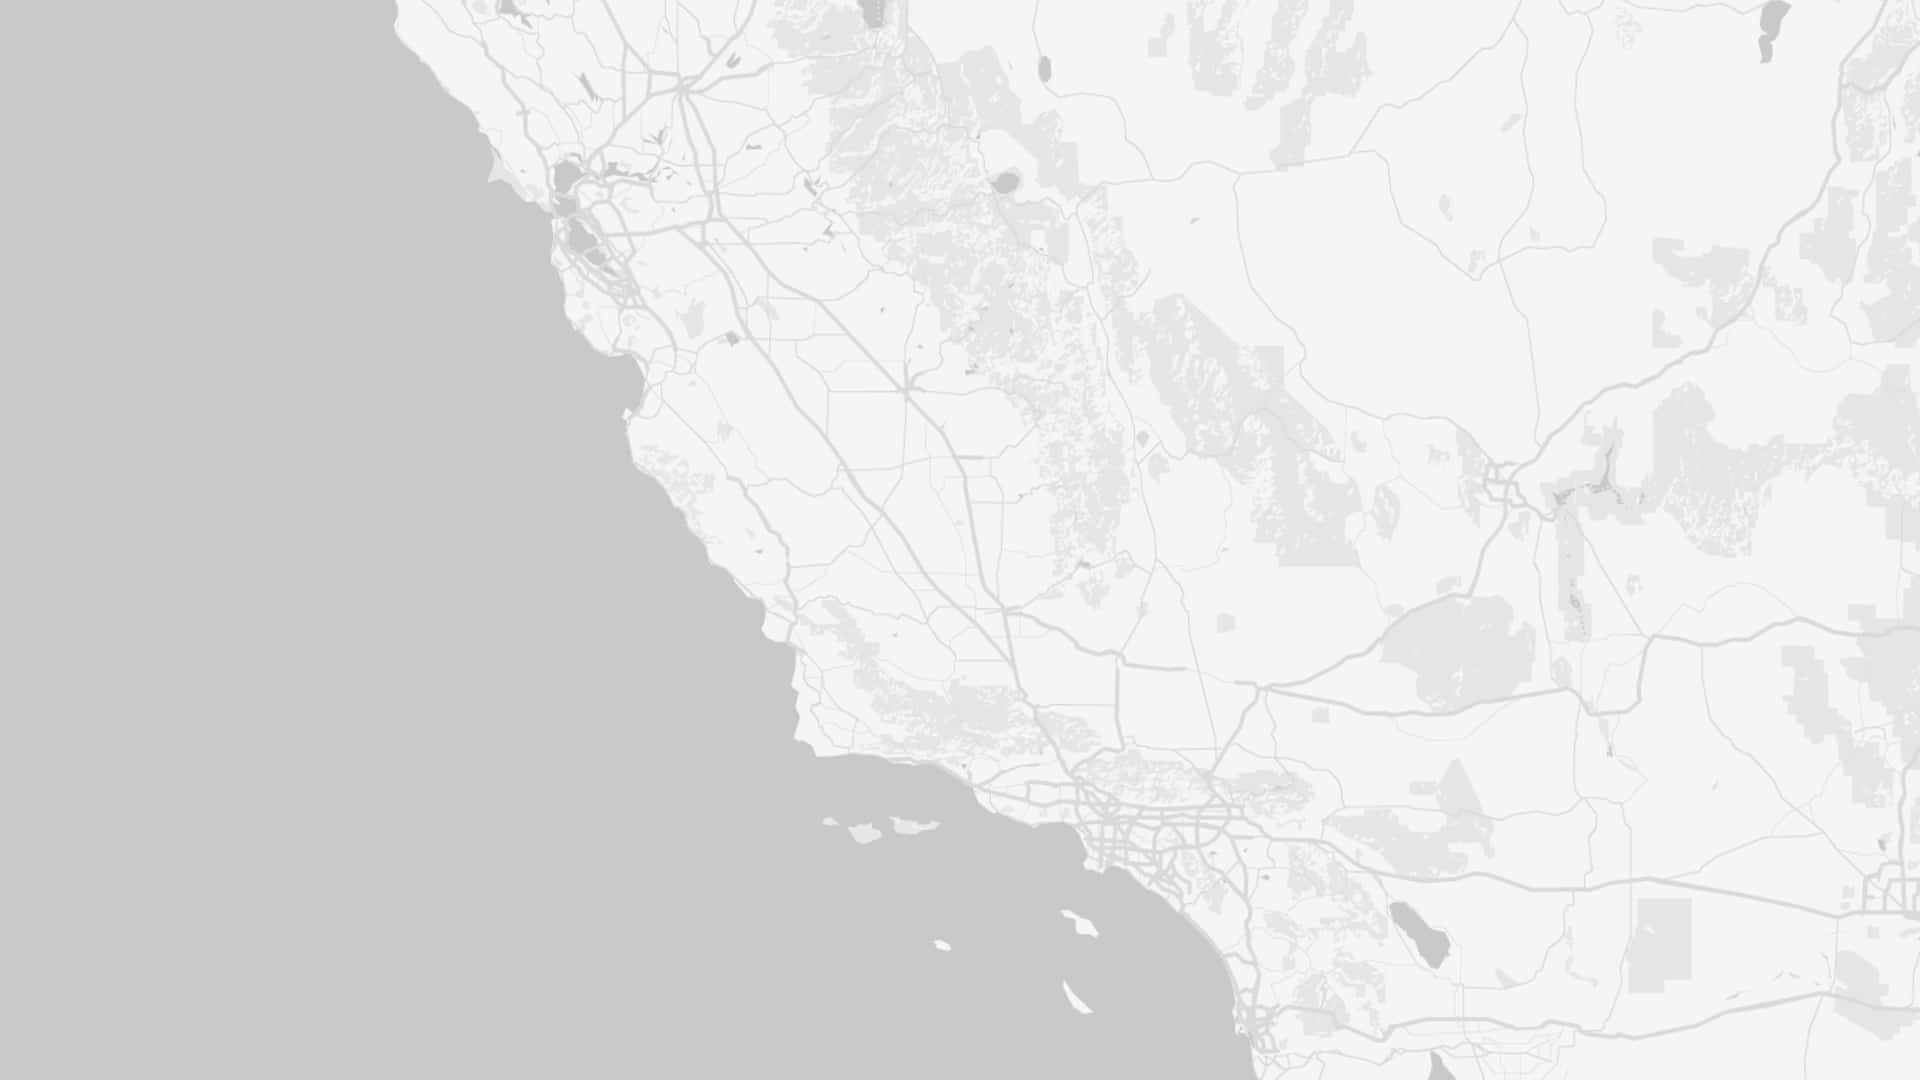 Karte von Kalifornien